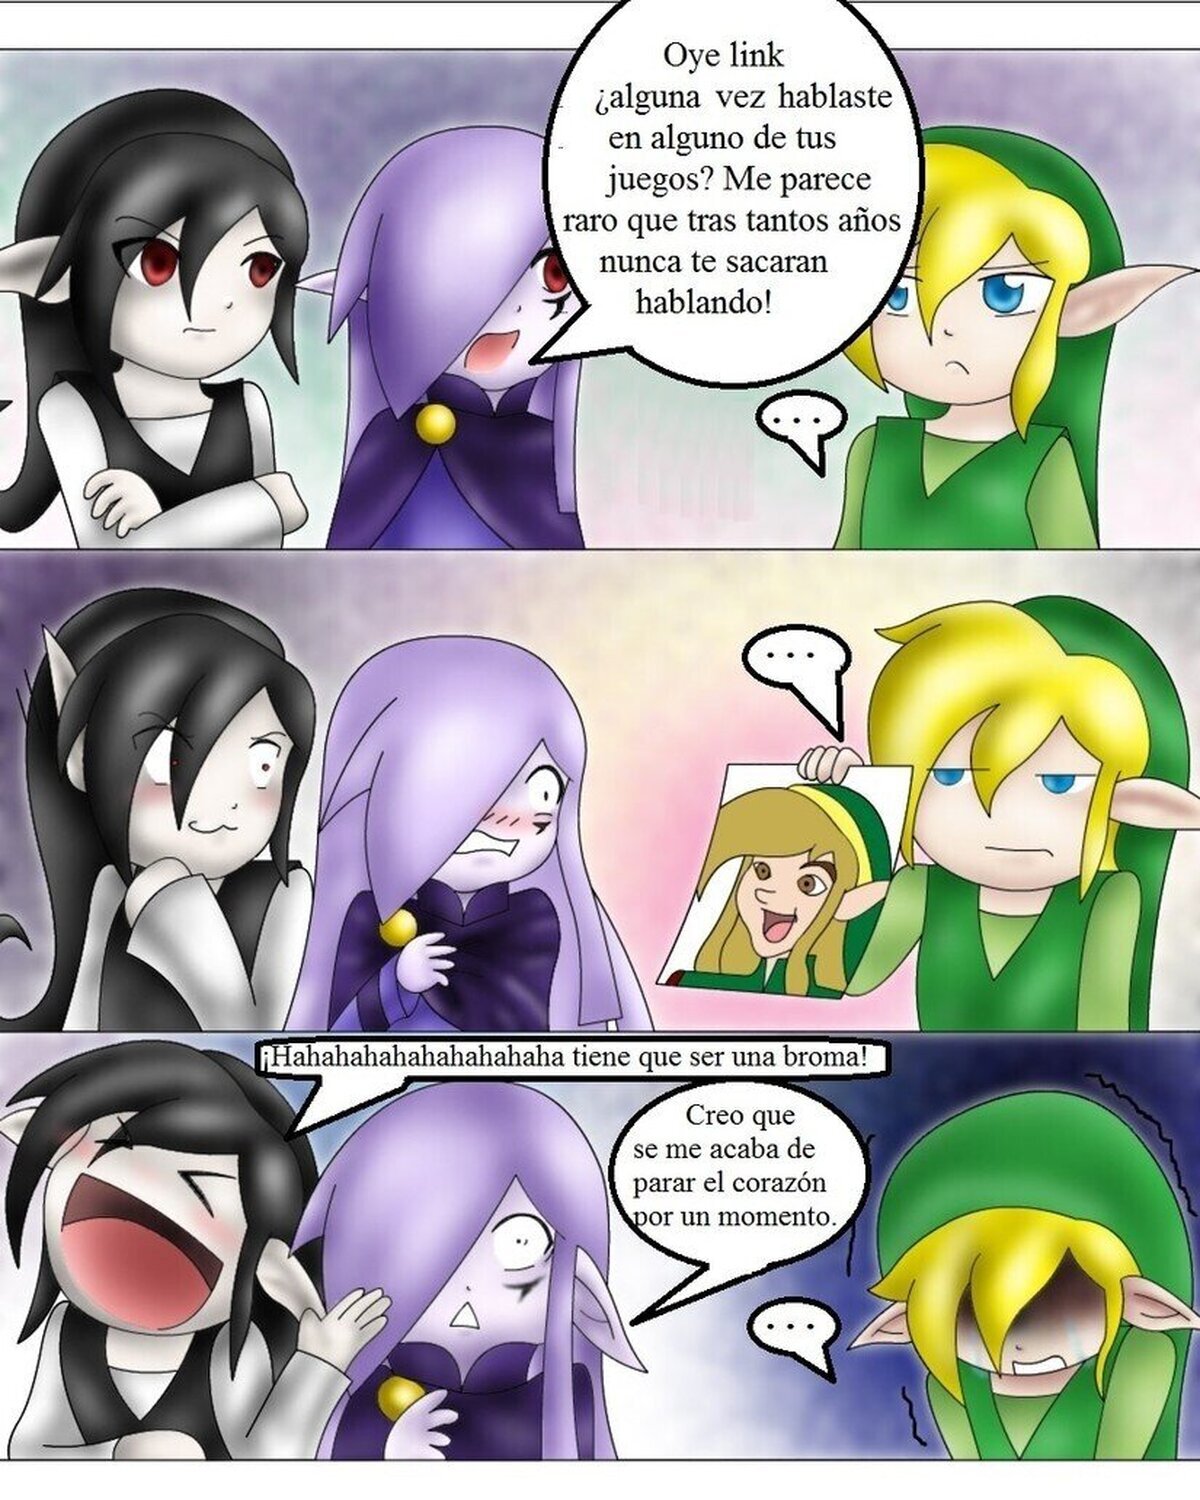 La razón por la que Link juró no volver a hablar nunca, ¡NUNCA! 